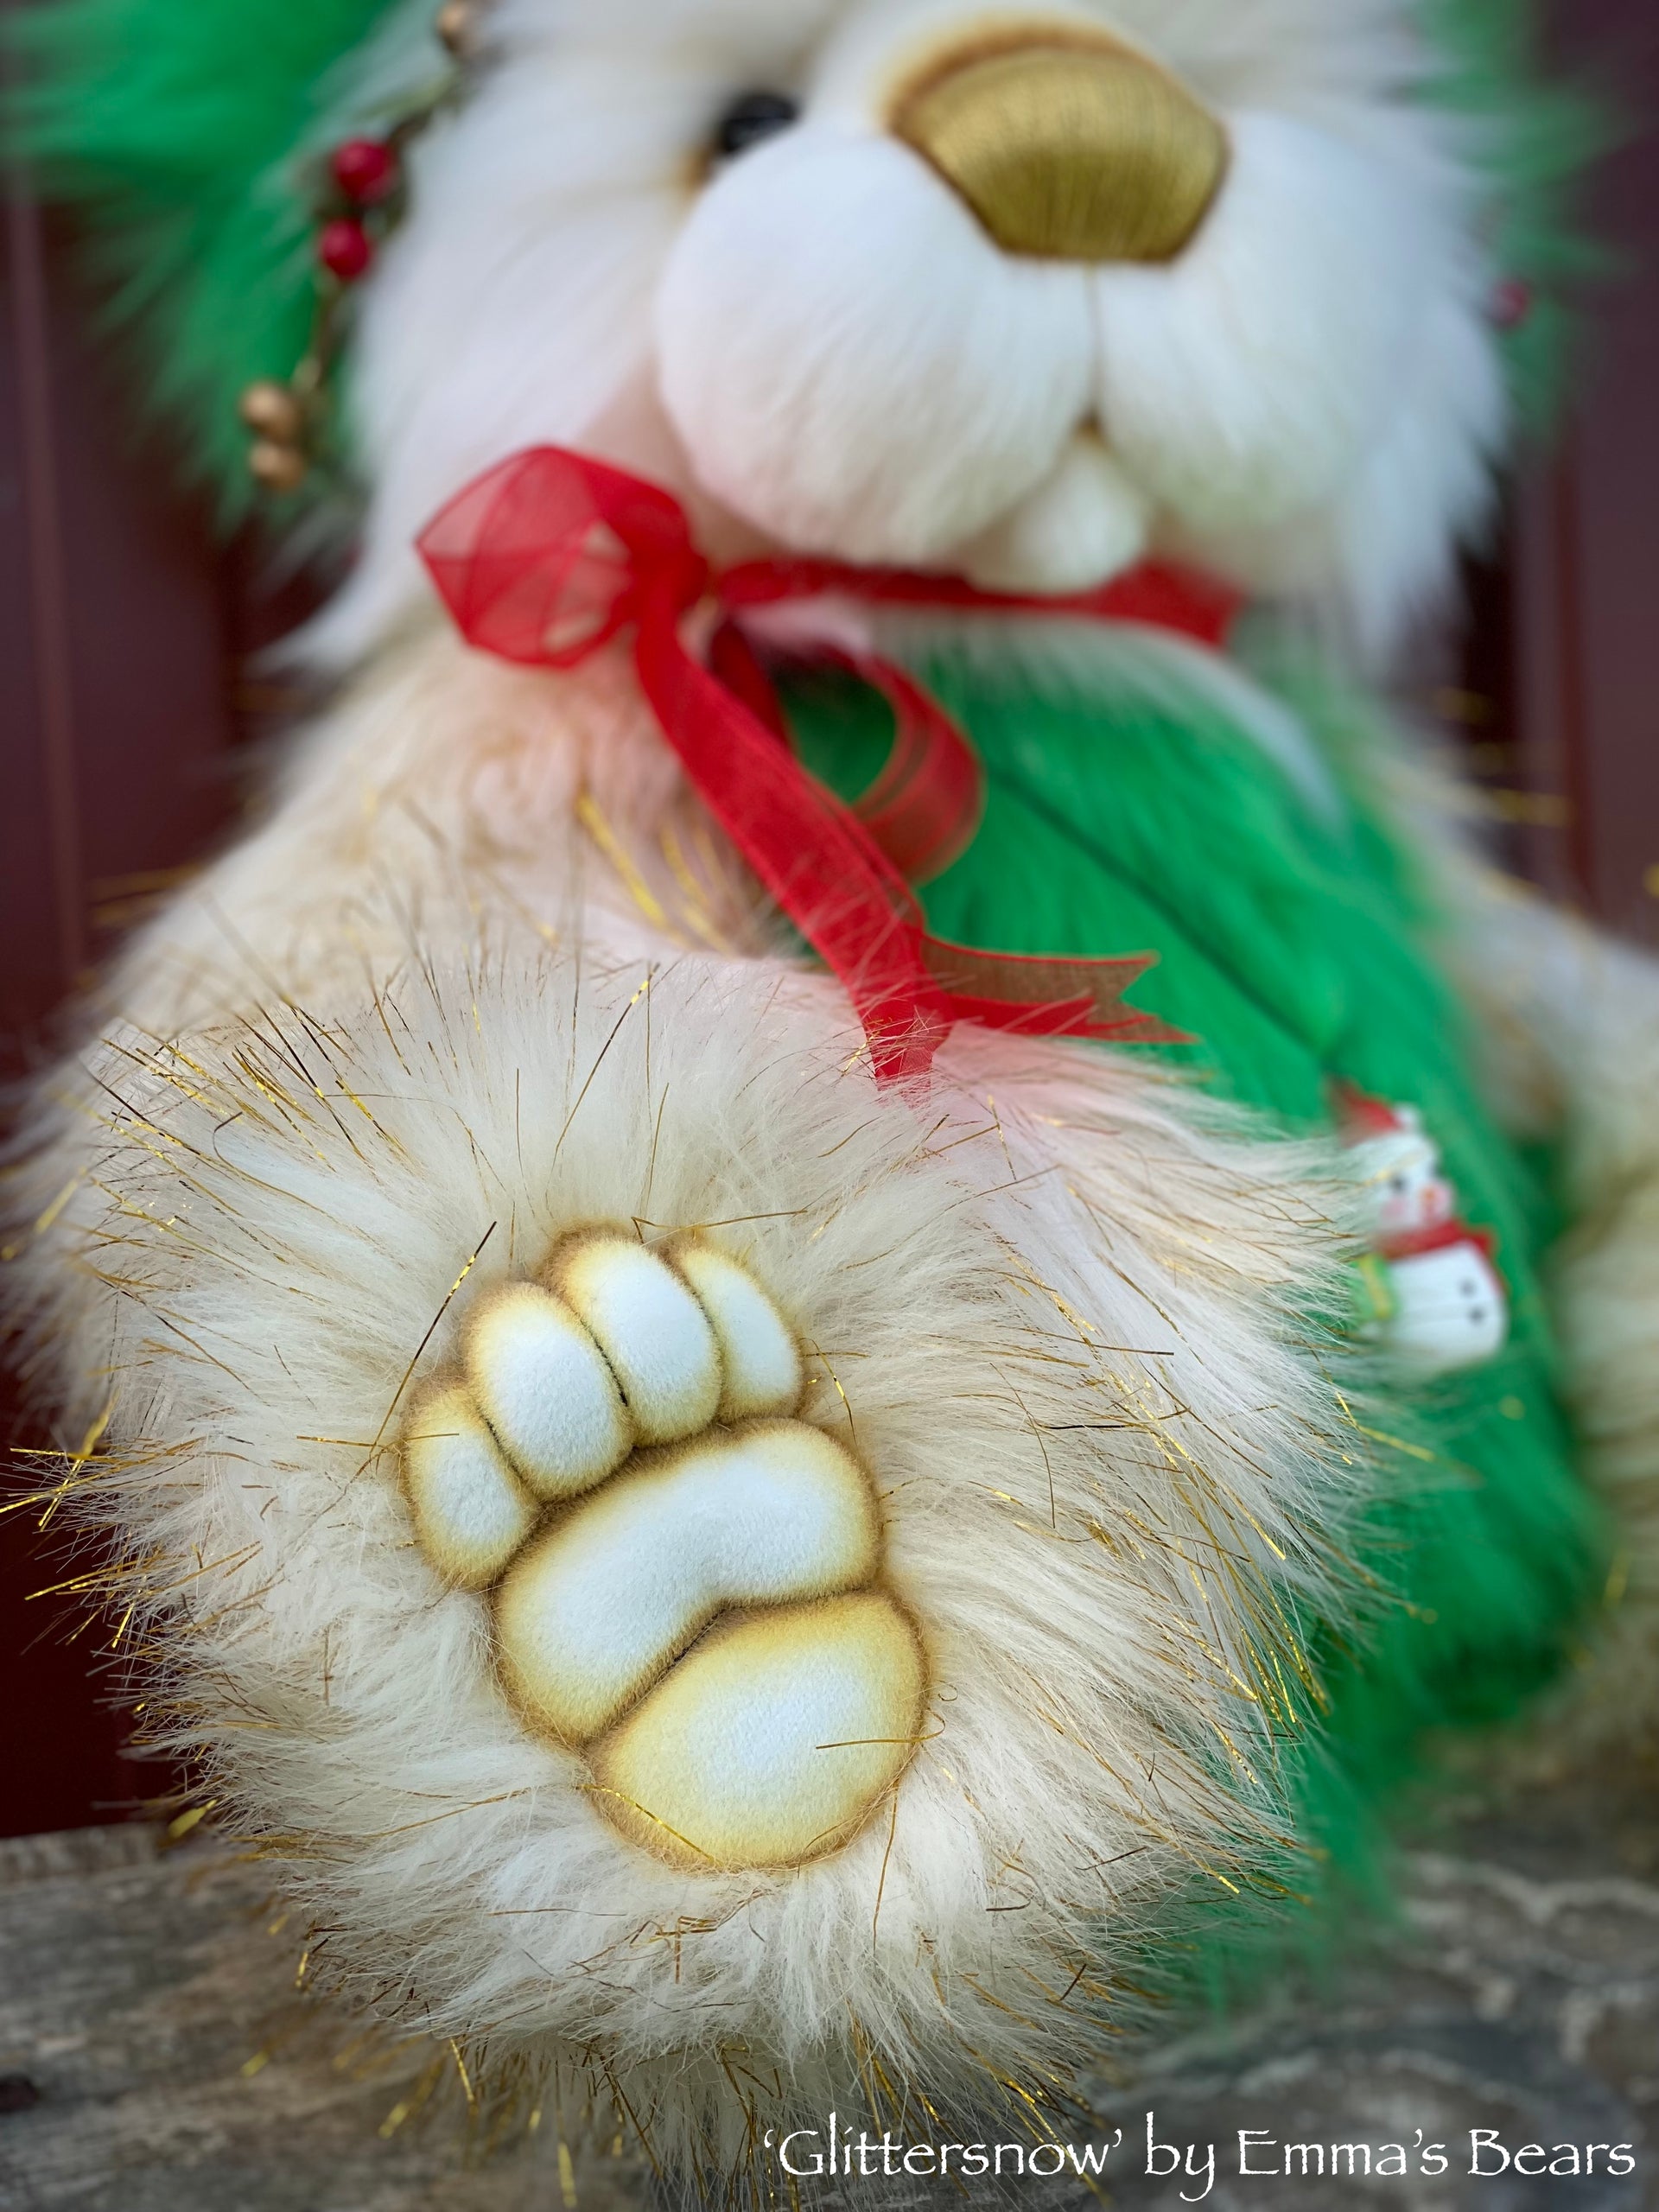 Glittersnow - 18" Faux Fur Christmas Artist Bear by Emma's Bears - OOAK